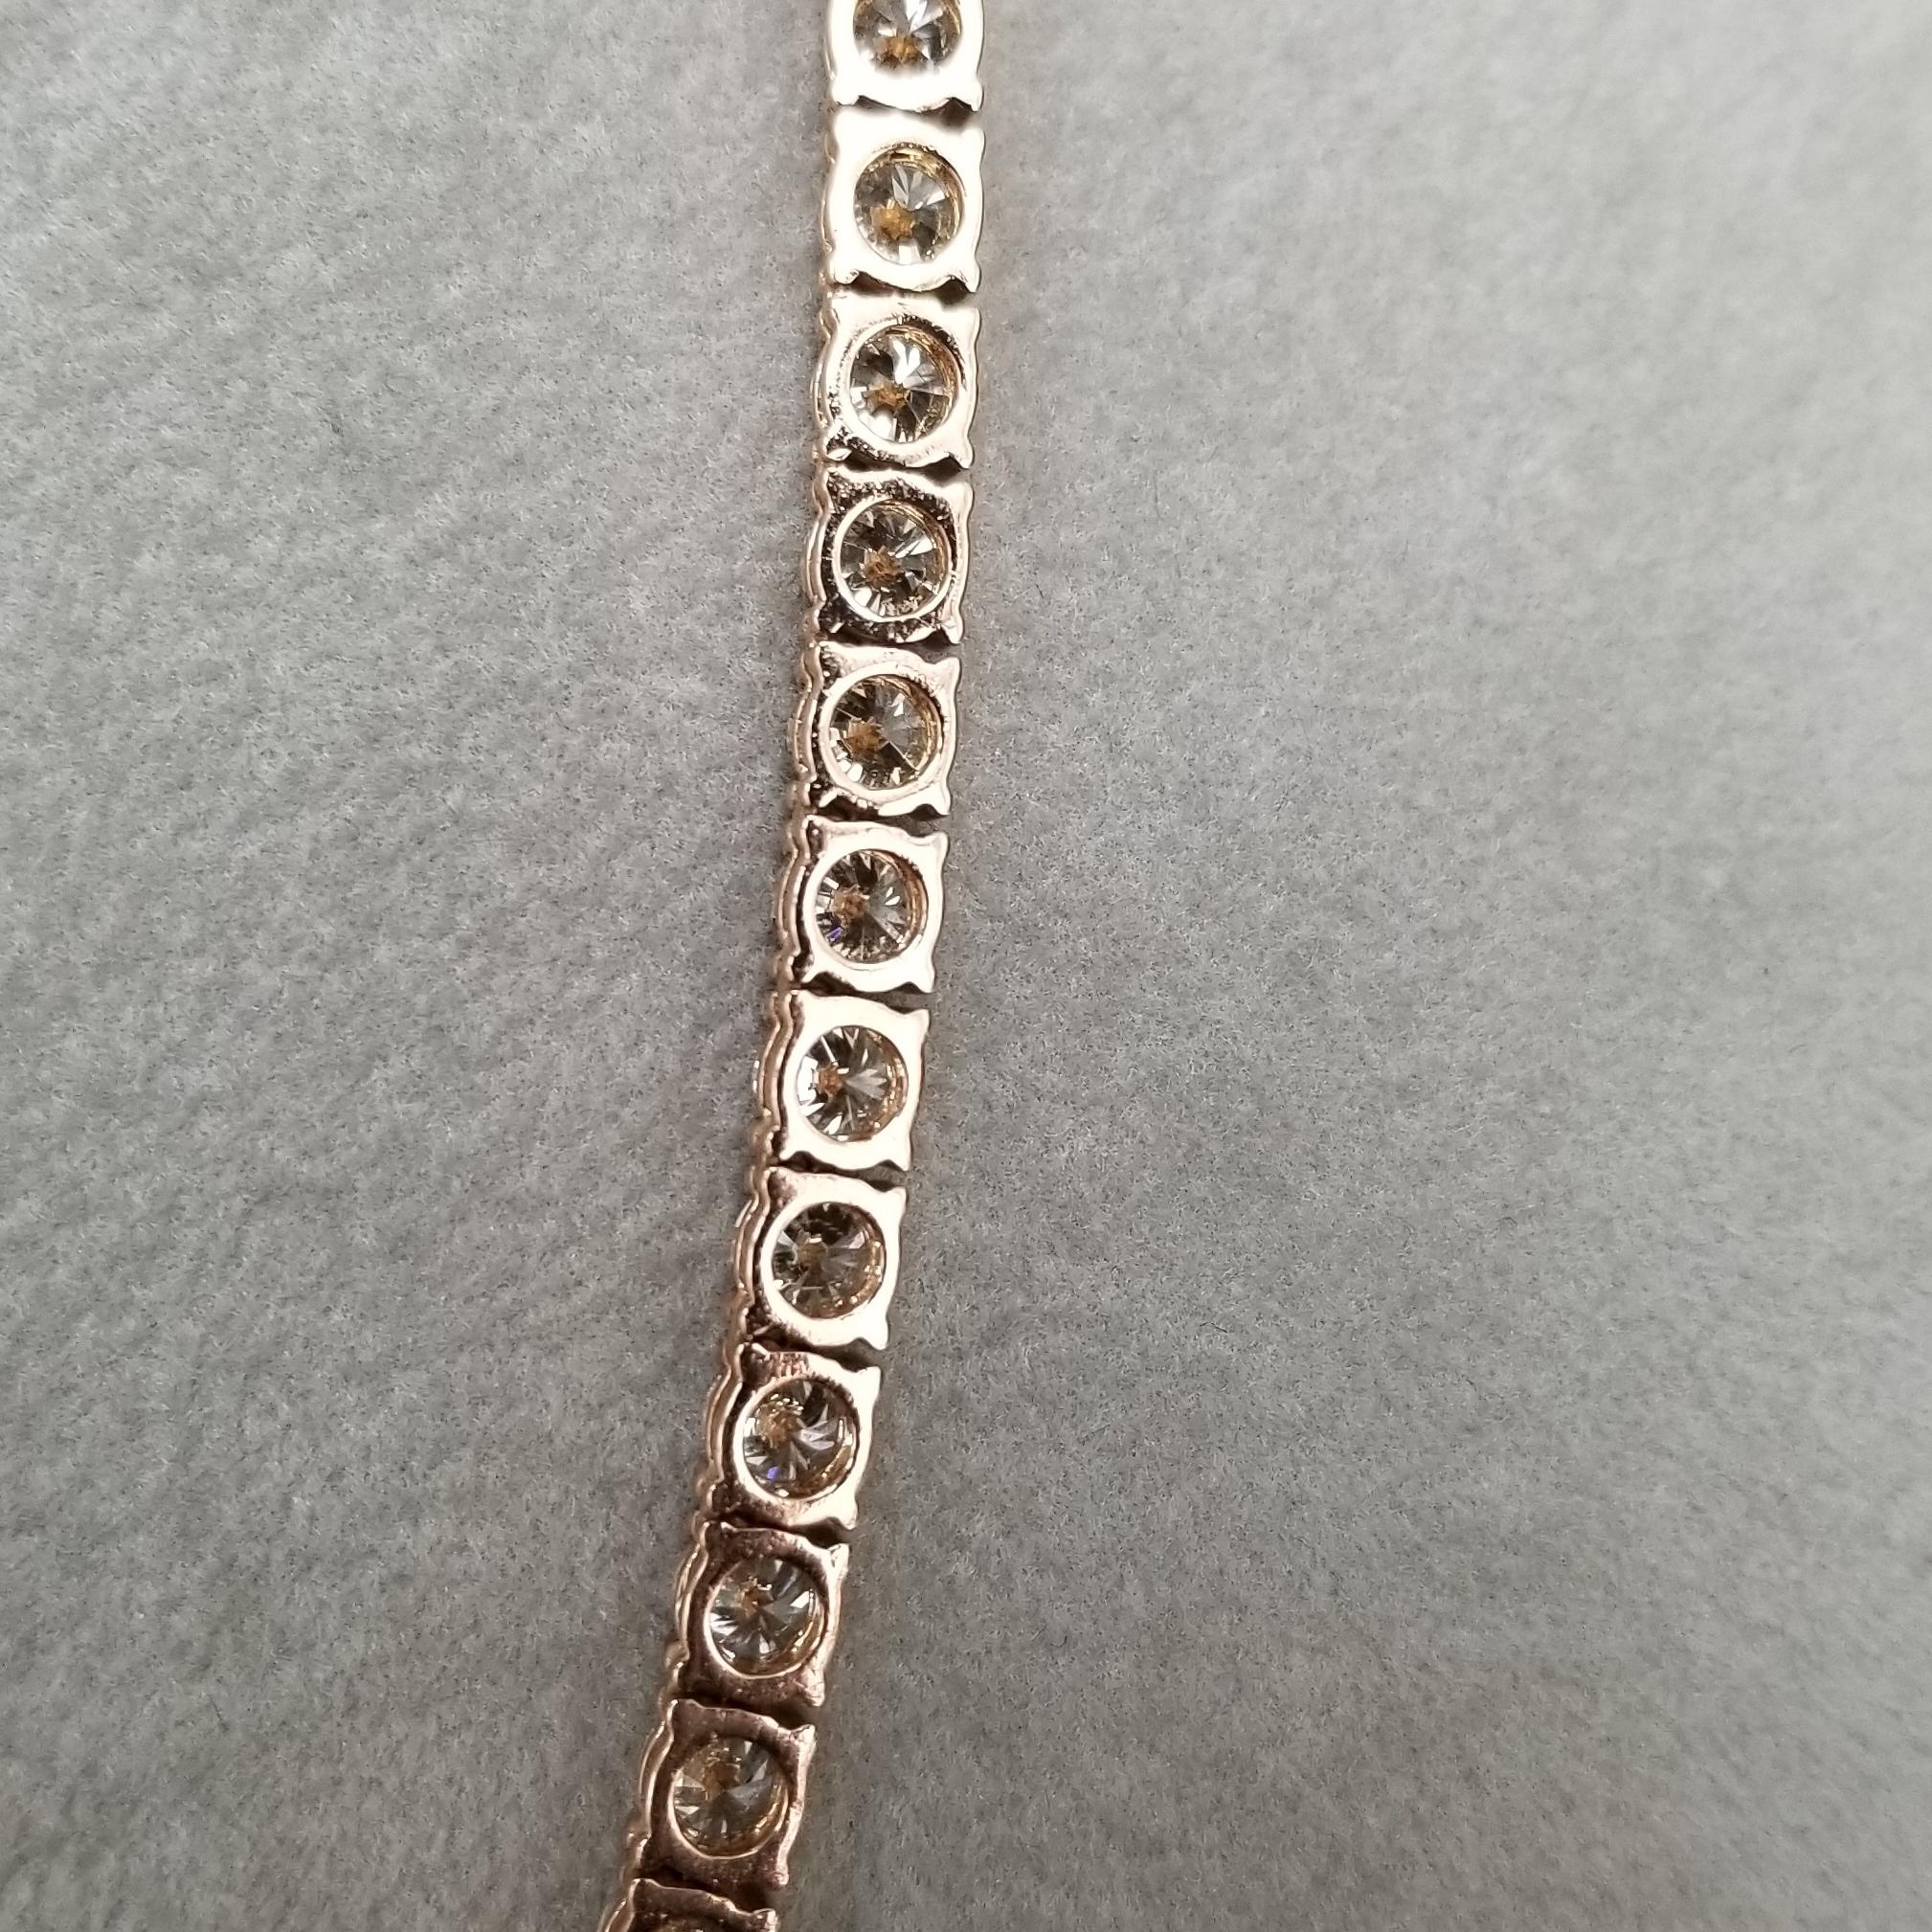 14k rose gold necklace